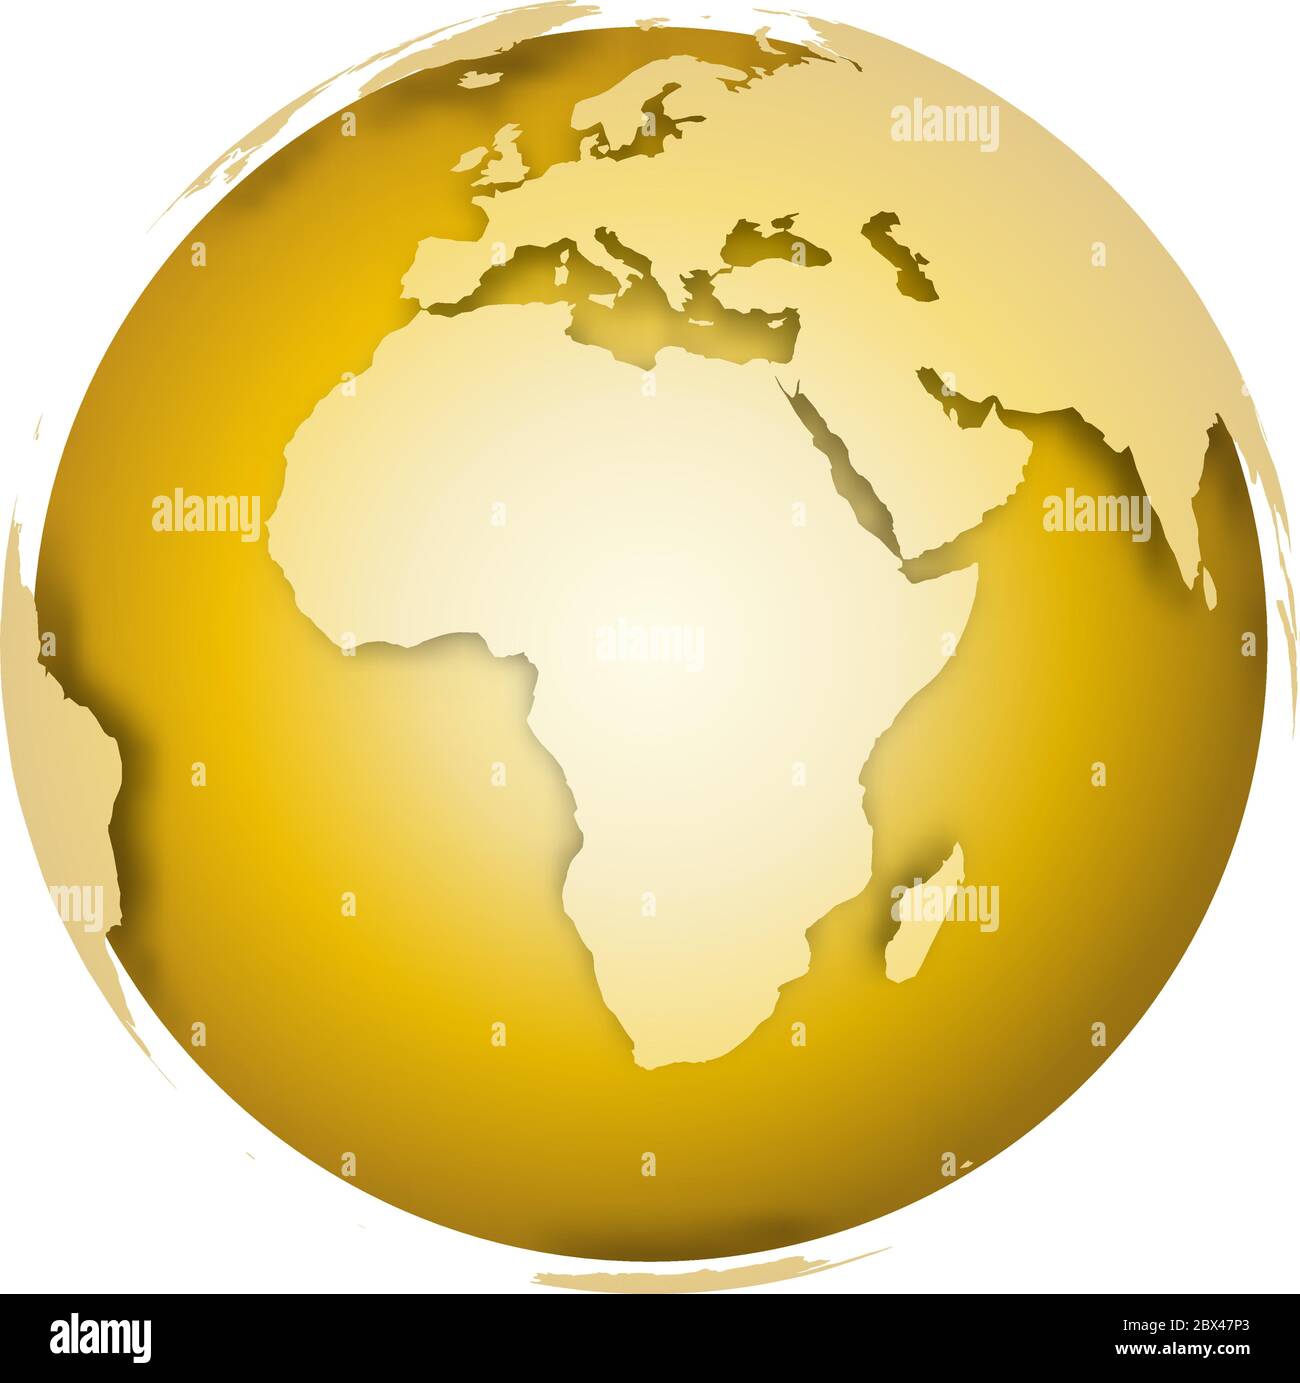 Globe terrestre d'or. Carte du monde en 3D avec des terres métalliques qui  jettent des ombres sur une surface dorée. Illustration vectorielle Image  Vectorielle Stock - Alamy